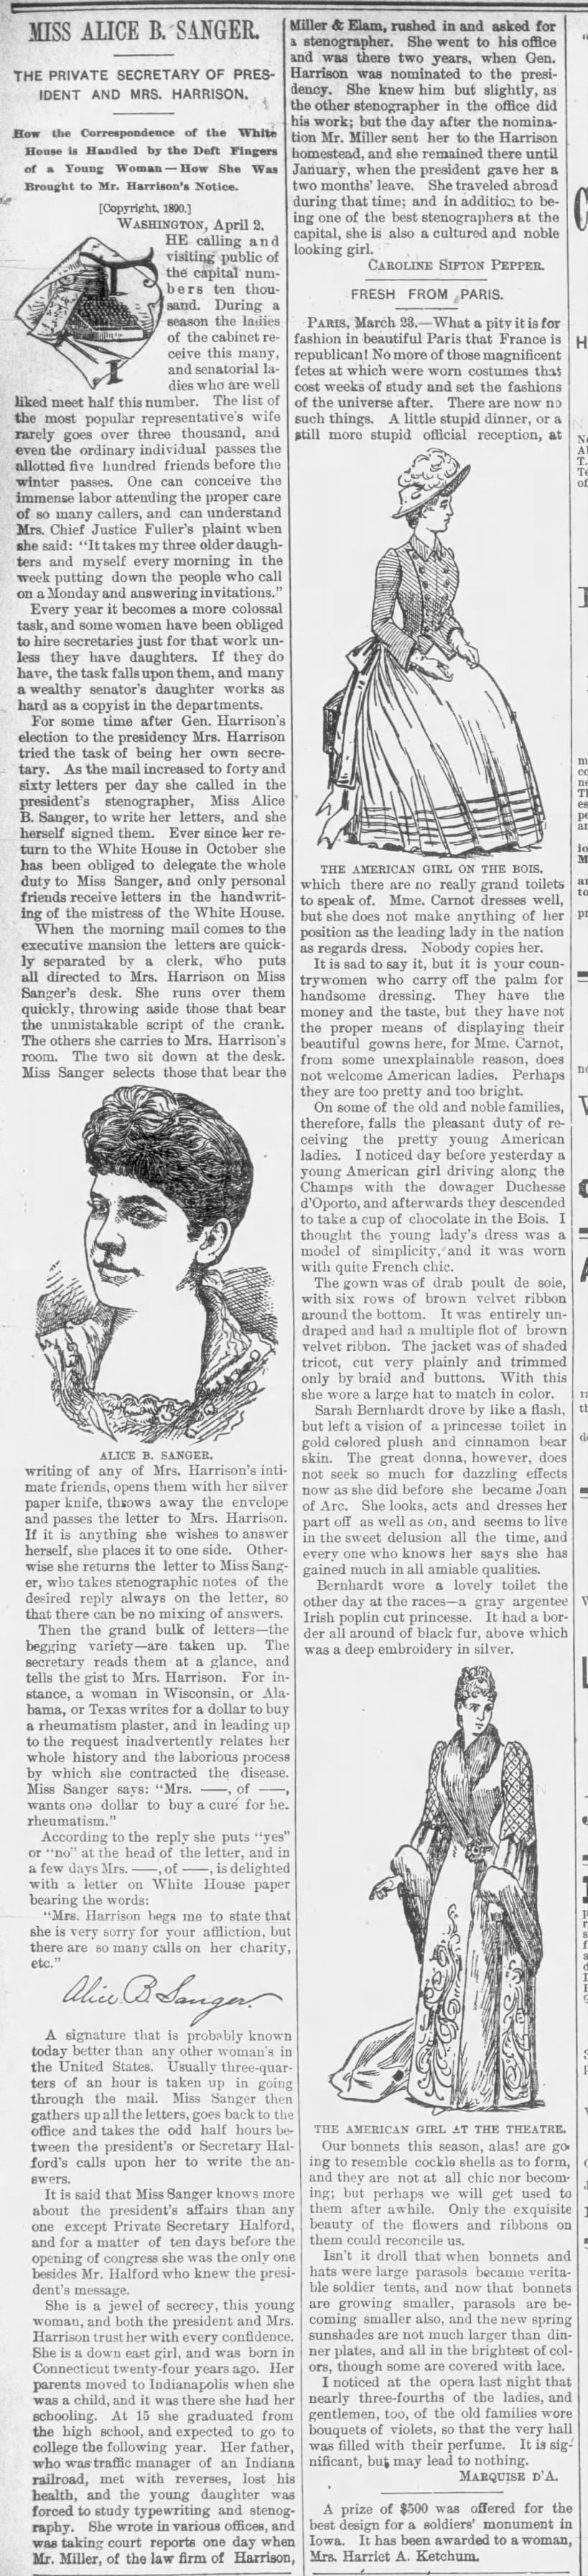 Spotlight on Alice B. Sanger, first female White House staffer (1890)